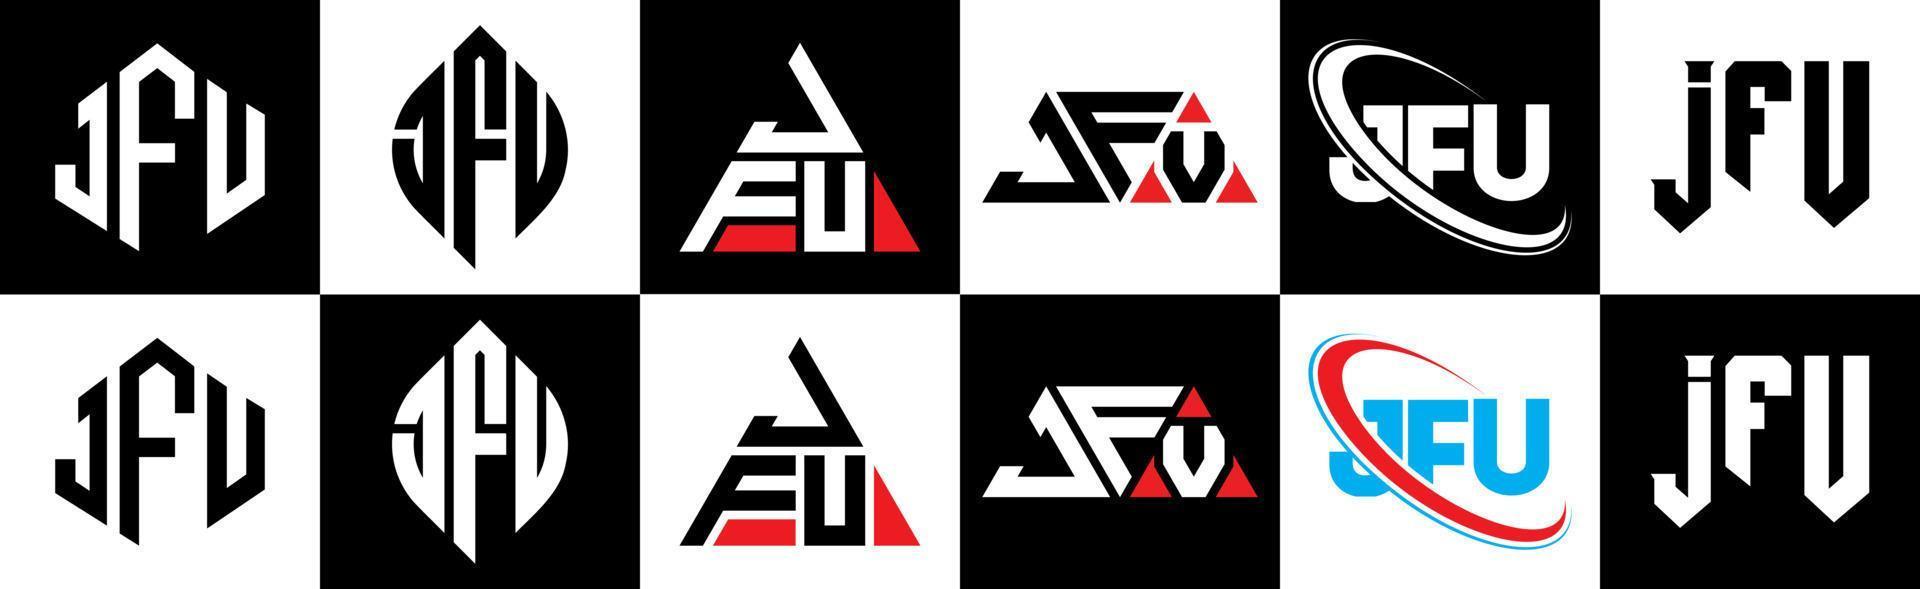 jfu-Buchstaben-Logo-Design in sechs Stilen. jfu Polygon, Kreis, Dreieck, Sechseck, flacher und einfacher Stil mit schwarz-weißem Buchstabenlogo in einer Zeichenfläche. jfu minimalistisches und klassisches Logo vektor